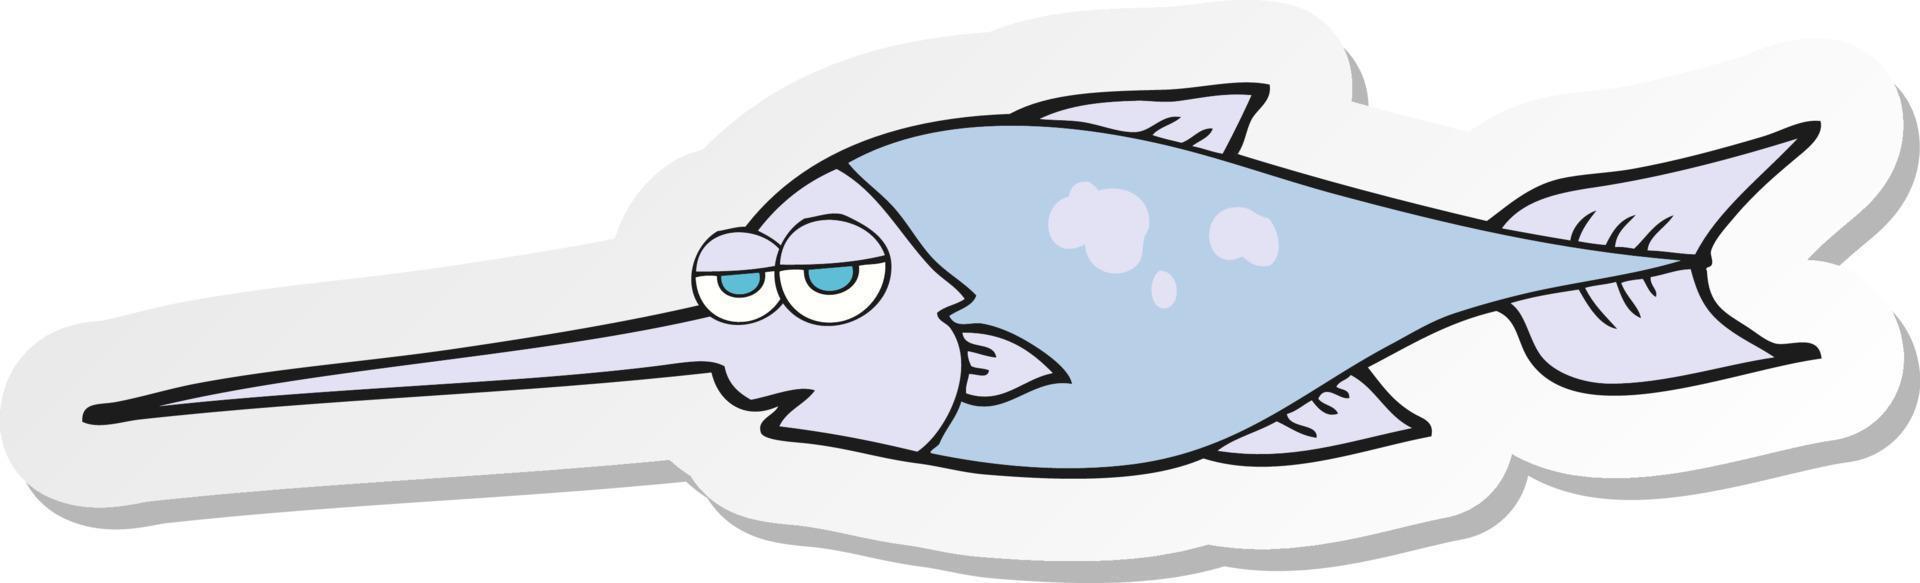 pegatina de un pez espada de dibujos animados vector